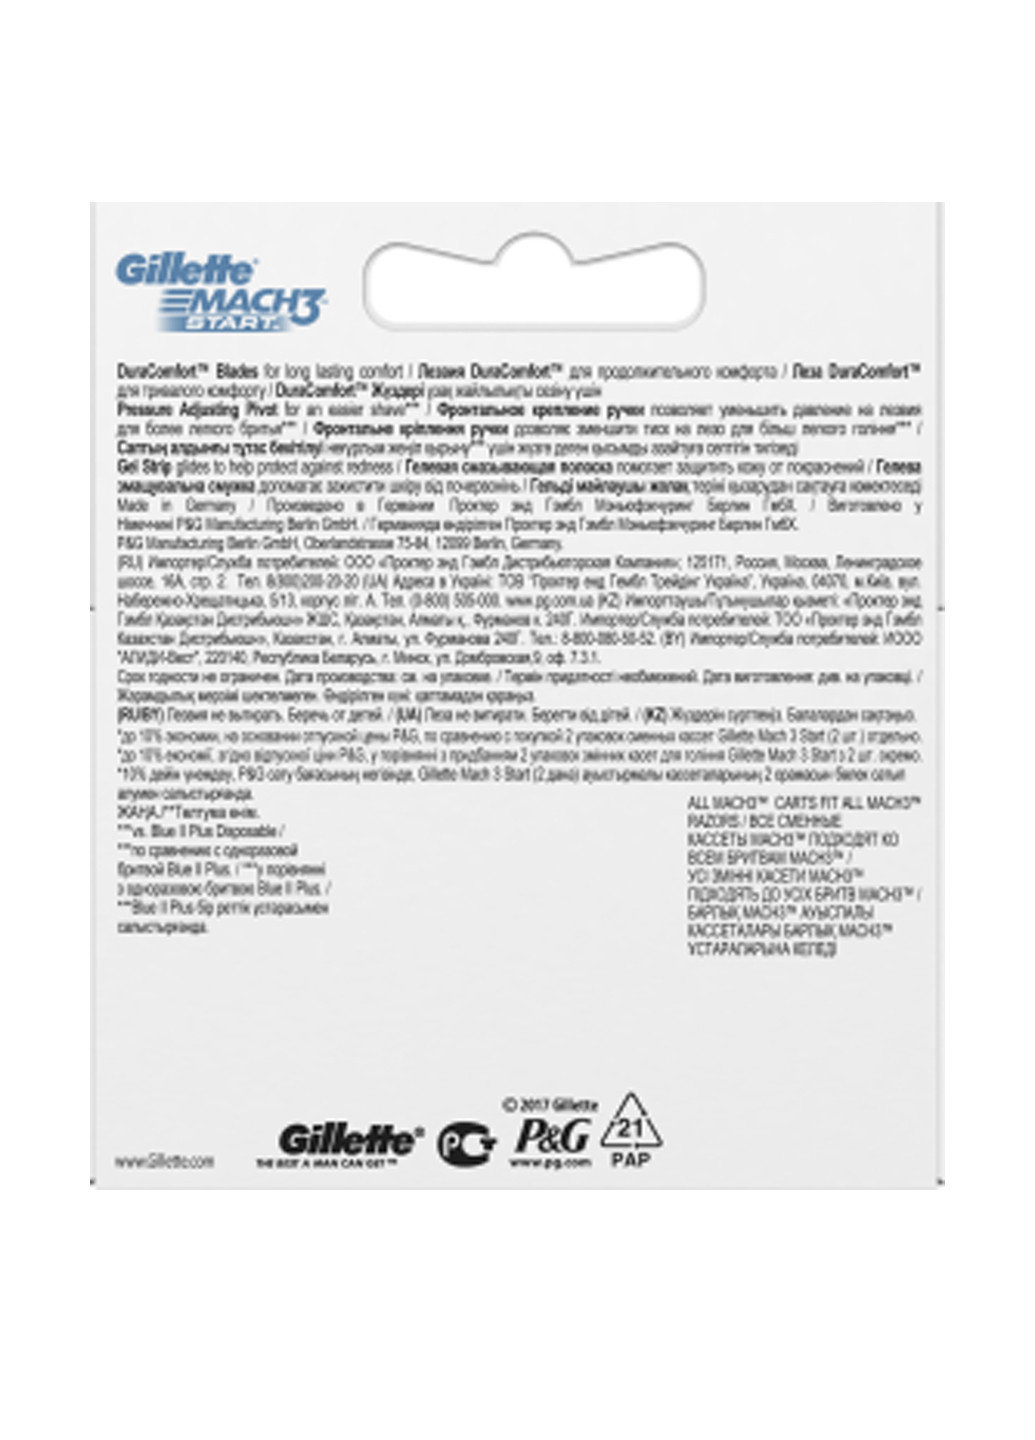 Змінні картриджі для гоління Mach3 Start (4 шт.) Gillette (138200433)